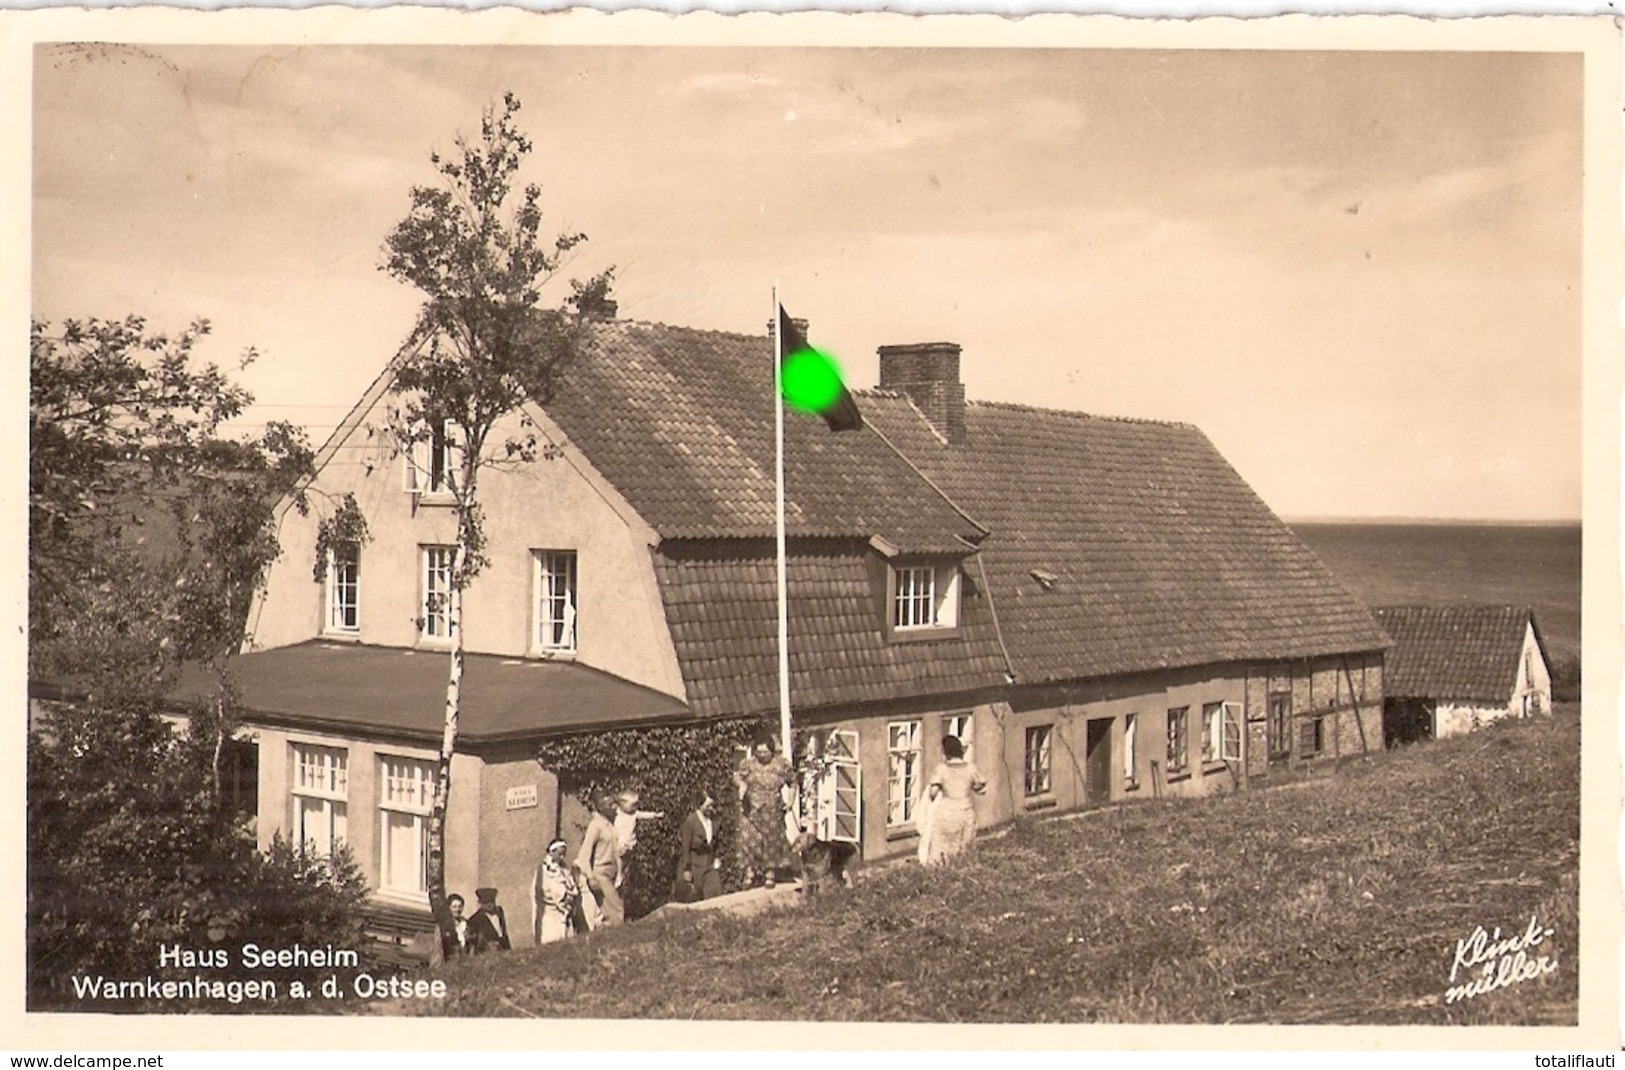 WARNKENHAGEN Ostsee Gem Kalkhorst Haus Seeheim Belebt 21.3.1944 Fast TOP-Erhaltung - Grevesmühlen